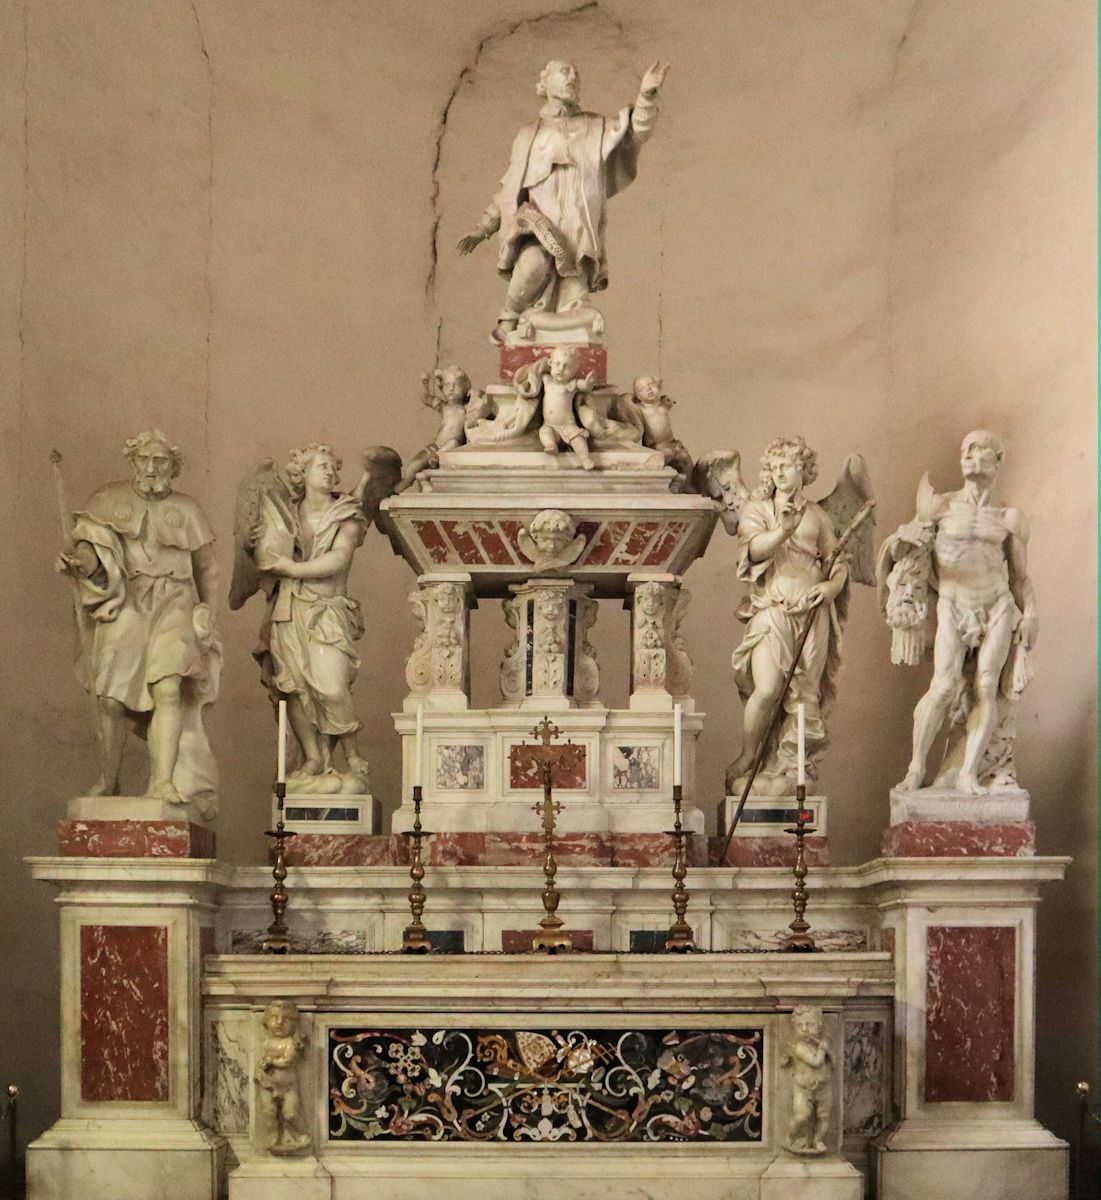 Maximus' Gebeine in der ihm geweihten Kapelle in der Basilika Santa Giustina in Padua